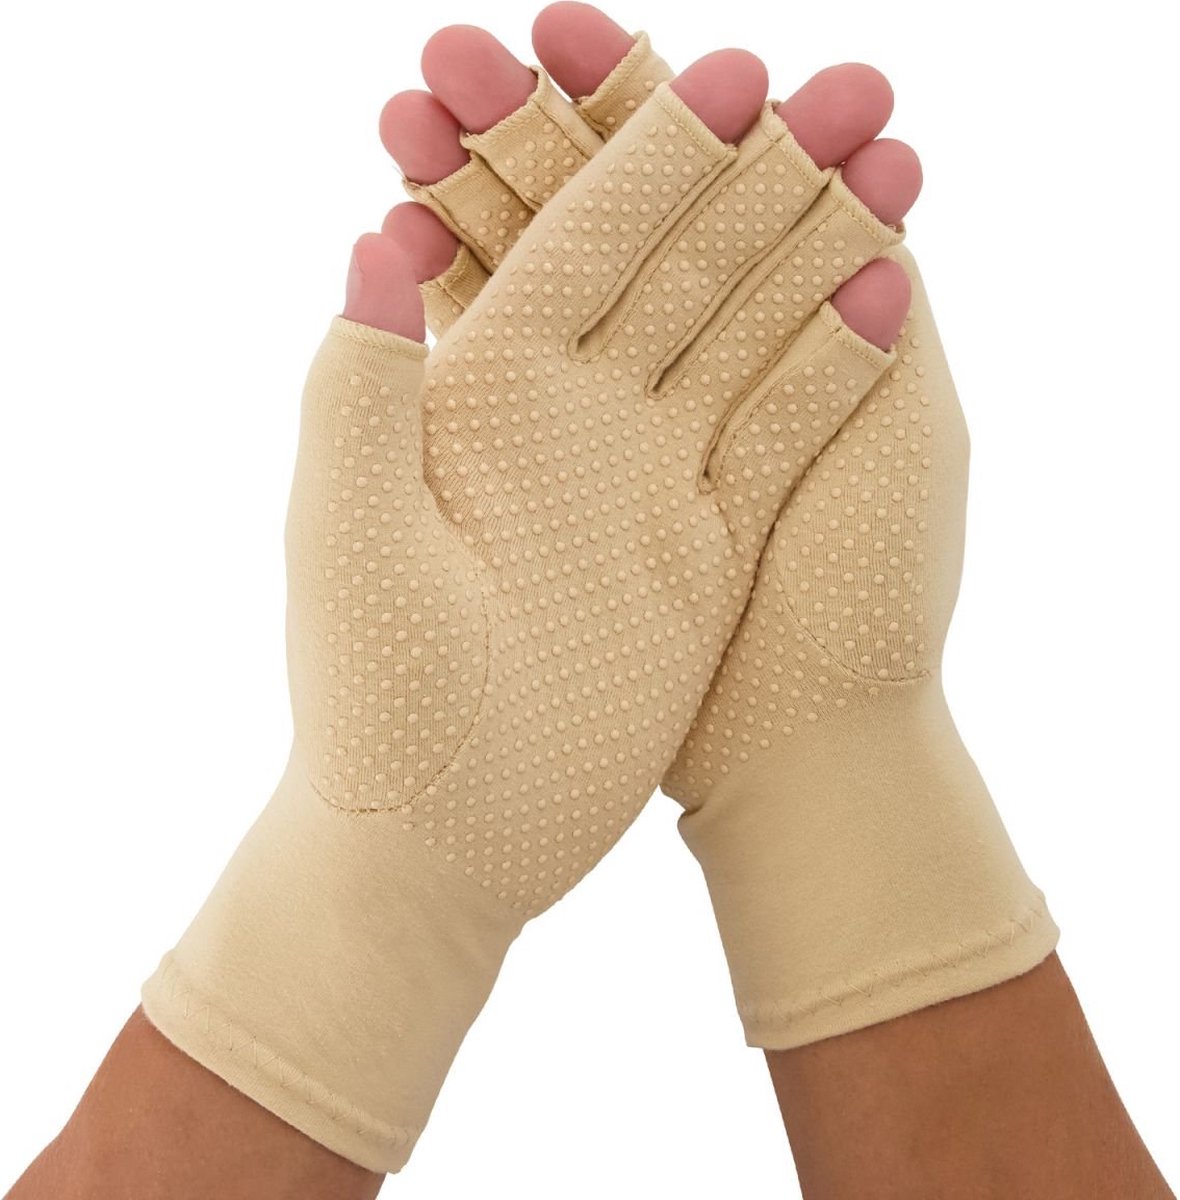 Medidu Artrose Handschoenen - Reuma Handschoenen met Antisliplaag - Artitis Handschoenen met Open Vingertoppen - Per Paar - Beige - XL